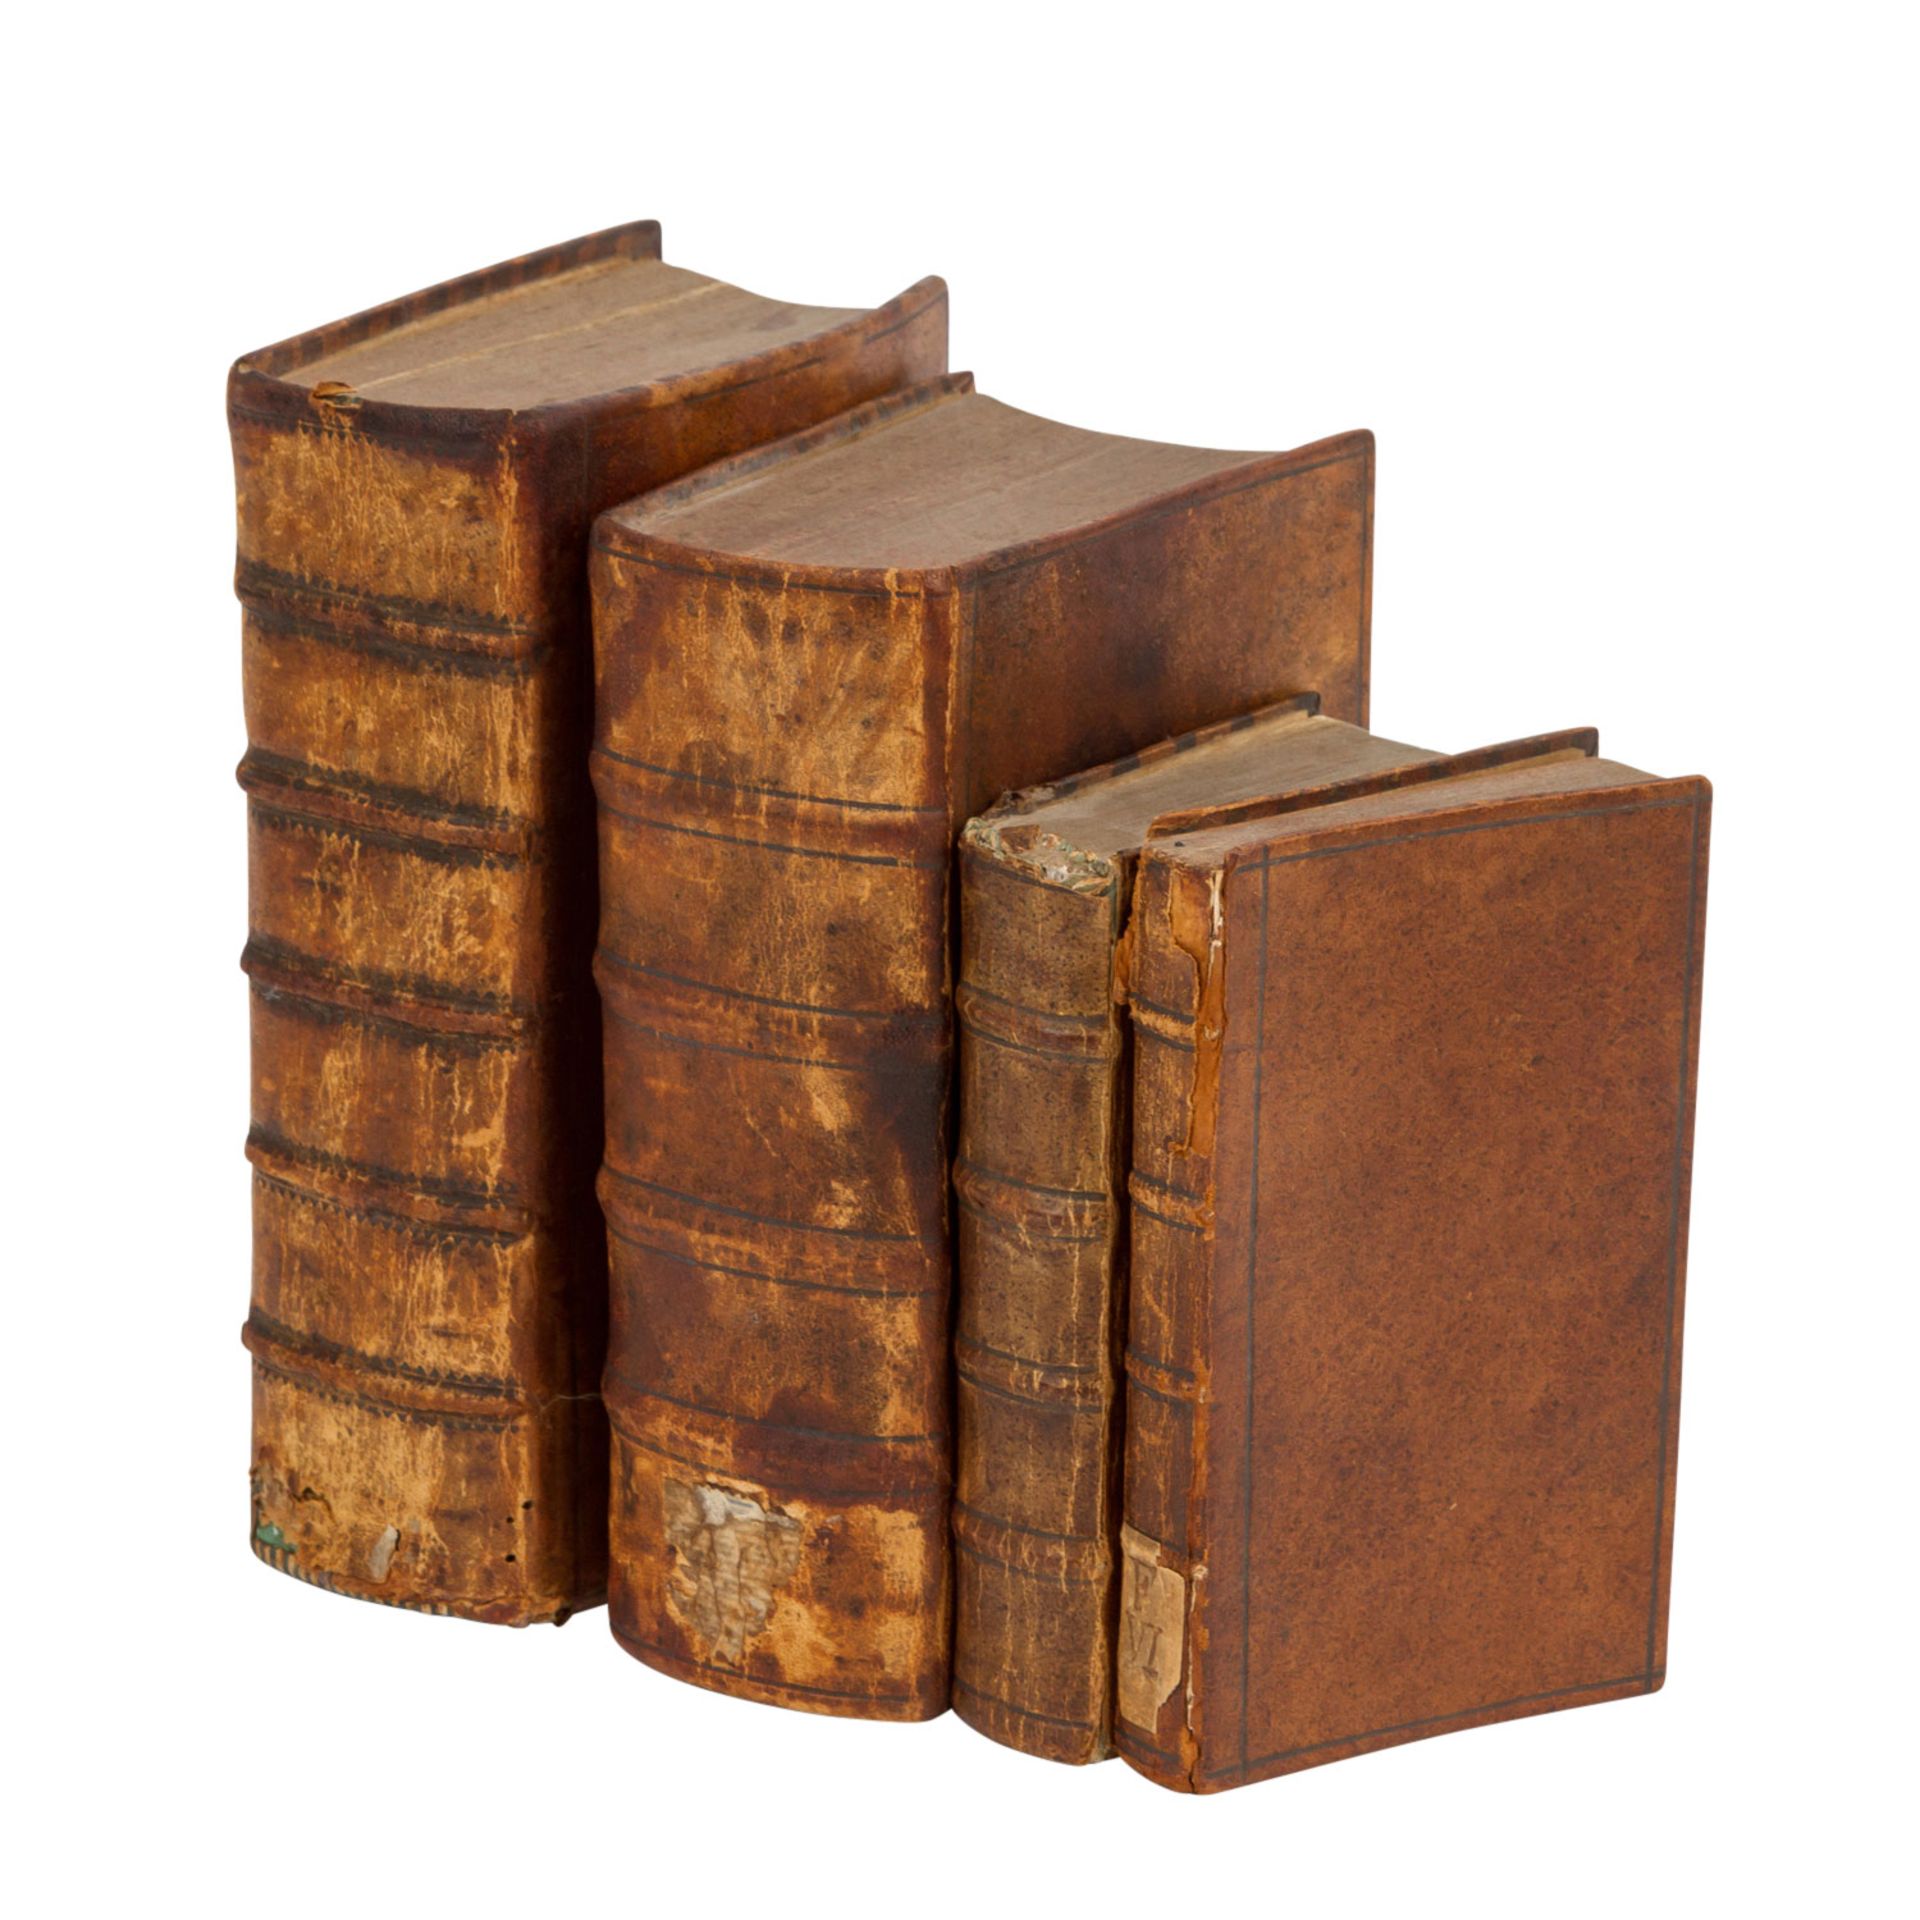 VIER RELIGIÖSE WERKE CAMILLO ETTORI "Heilige Einöde..."1728, Verlag: Clementin. Buch